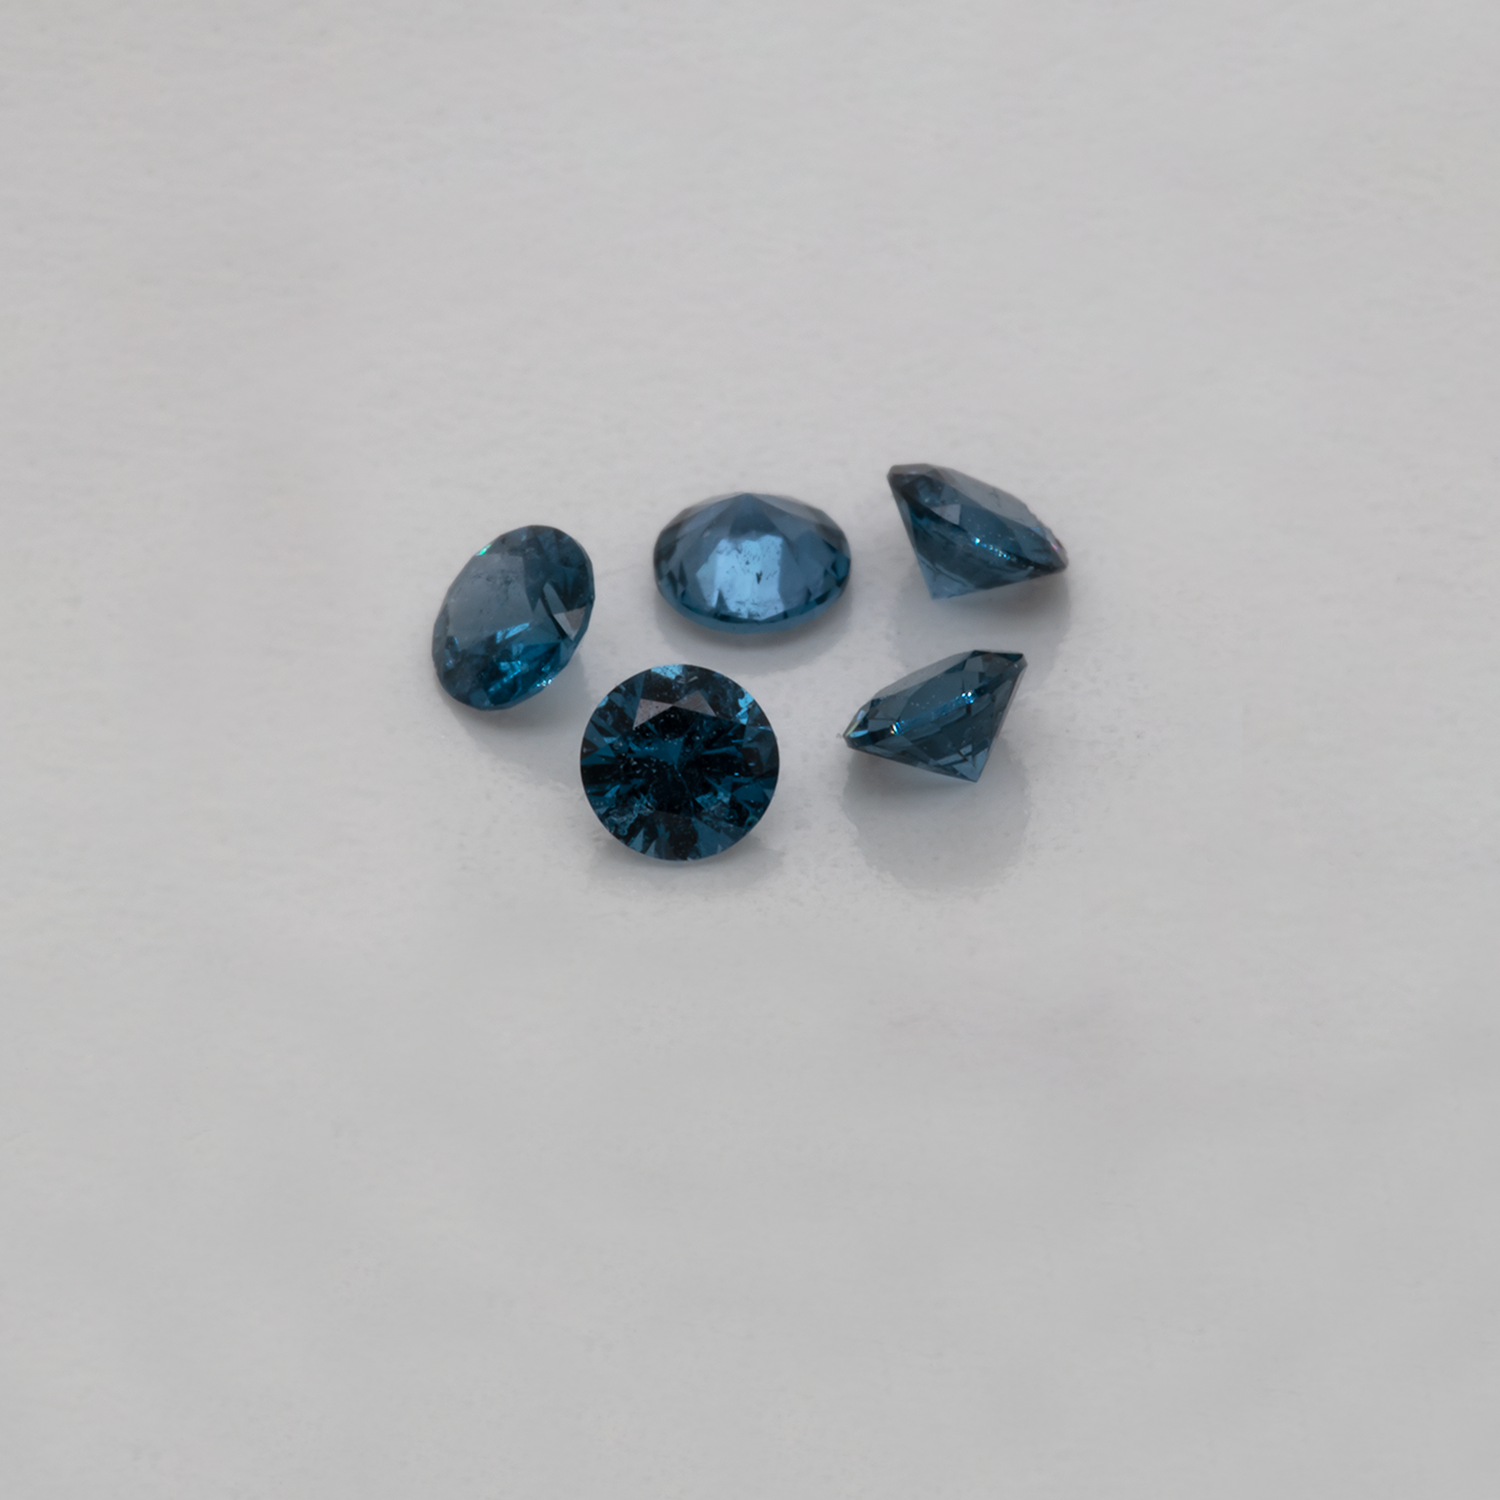 Spinell - blau, rund, 2,6x2,6 mm, 0,082-0,089 cts, Nr. SP90040